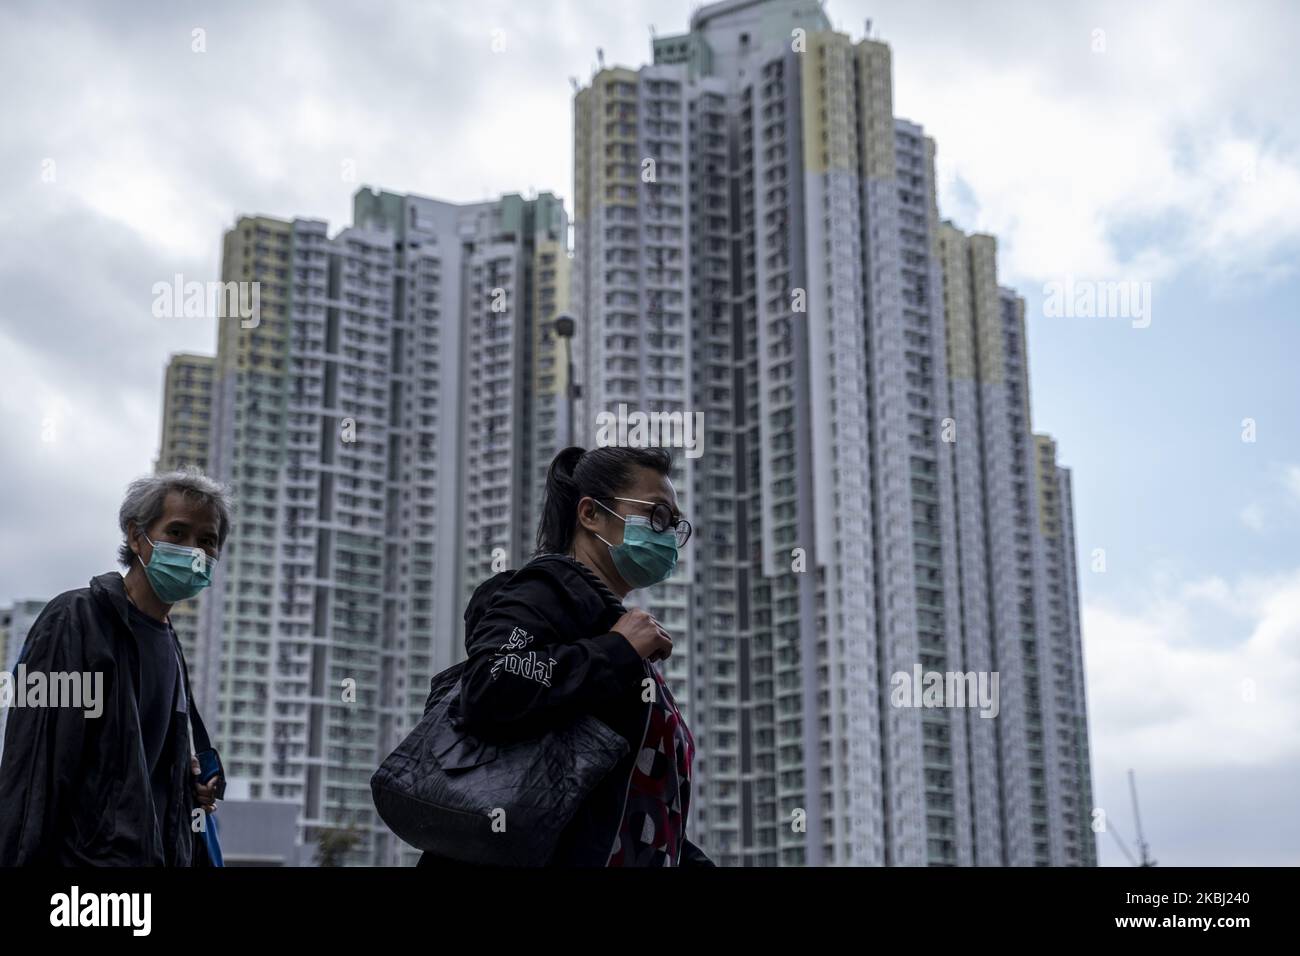 Am 27. Februar 2020 in Hongkong, China, werden maskierte Menschen am Wohnhausgebäude vorbeilaufen sehen. Das Coronavirus oder Covid-19, das aus Wuhan China stammt, hat bis heute über 82.000 Menschen infiziert und 2810 Menschen weltweit getötet. (Foto von Vernon Yuen/NurPhoto) Stockfoto